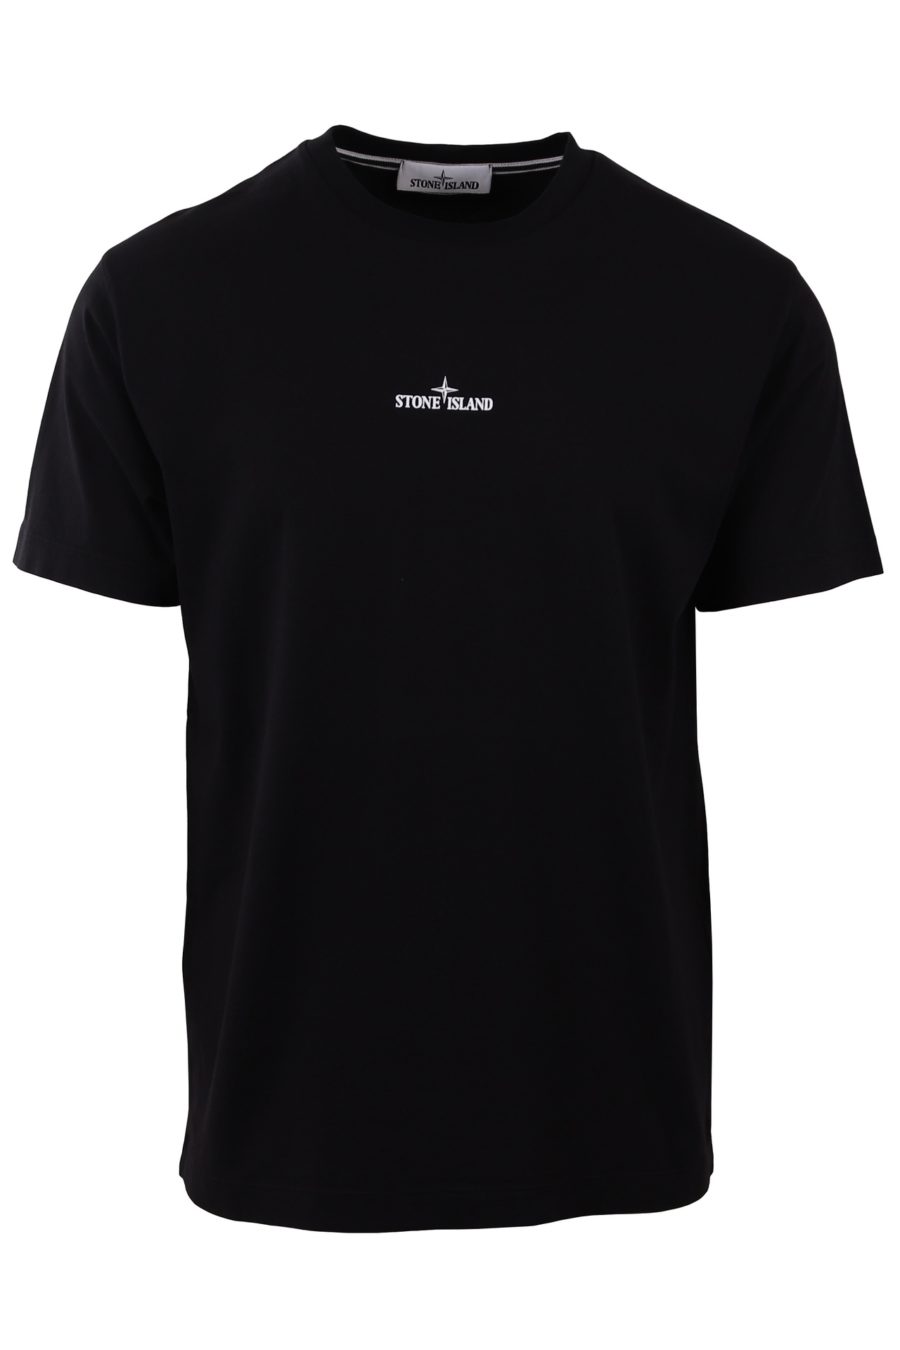 Camiseta Stone Island negra con logo pequeño - 484ec5245b02be6e1766d9ccbe2ce30e5fd79b44